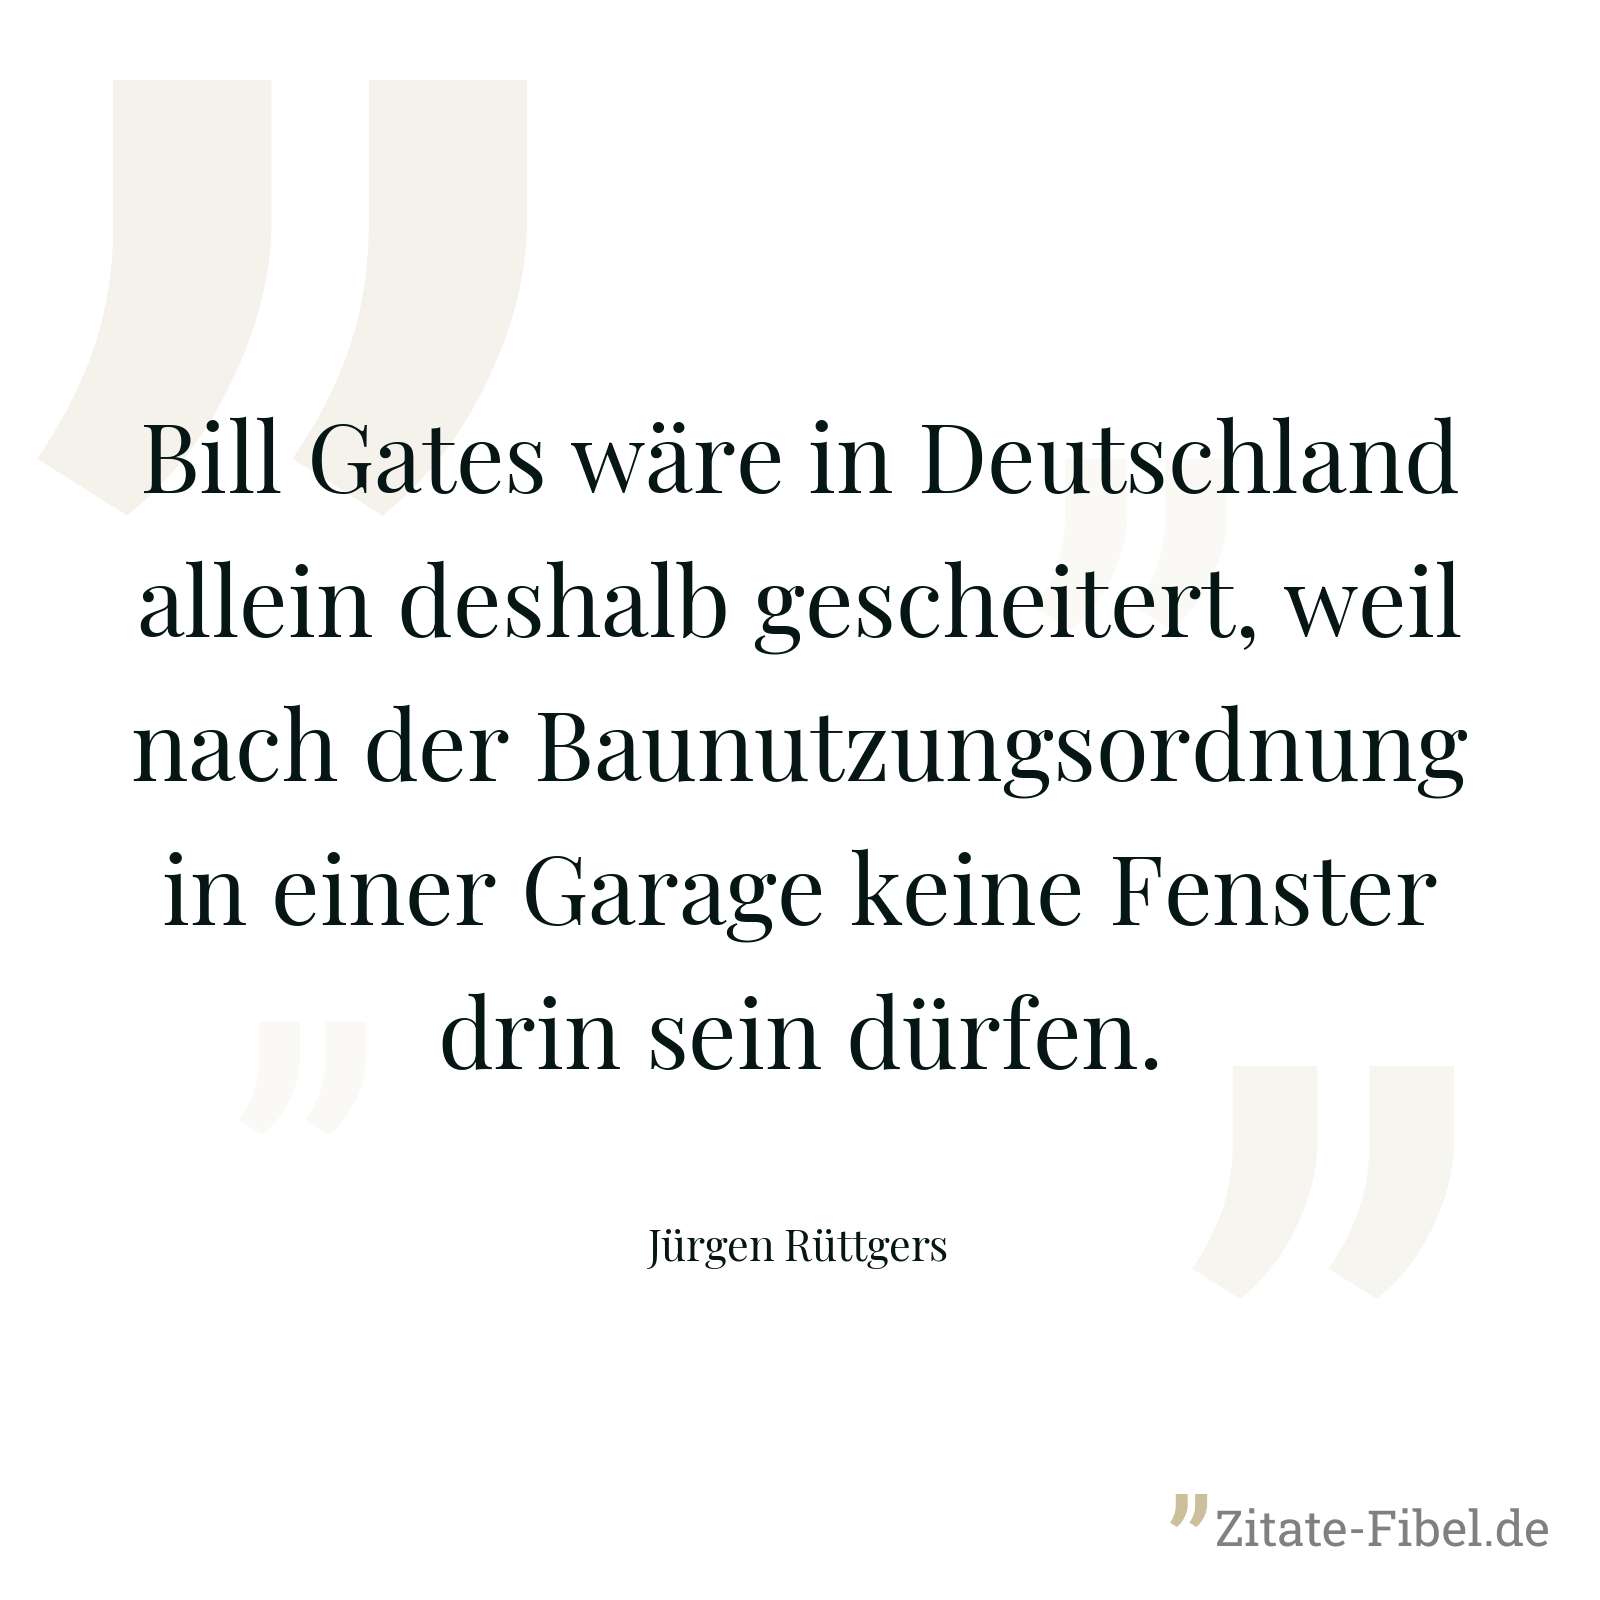 Bill Gates wäre in Deutschland allein deshalb gescheitert, weil nach der Baunutzungsordnung in einer Garage keine Fenster drin sein dürfen. - Jürgen Rüttgers